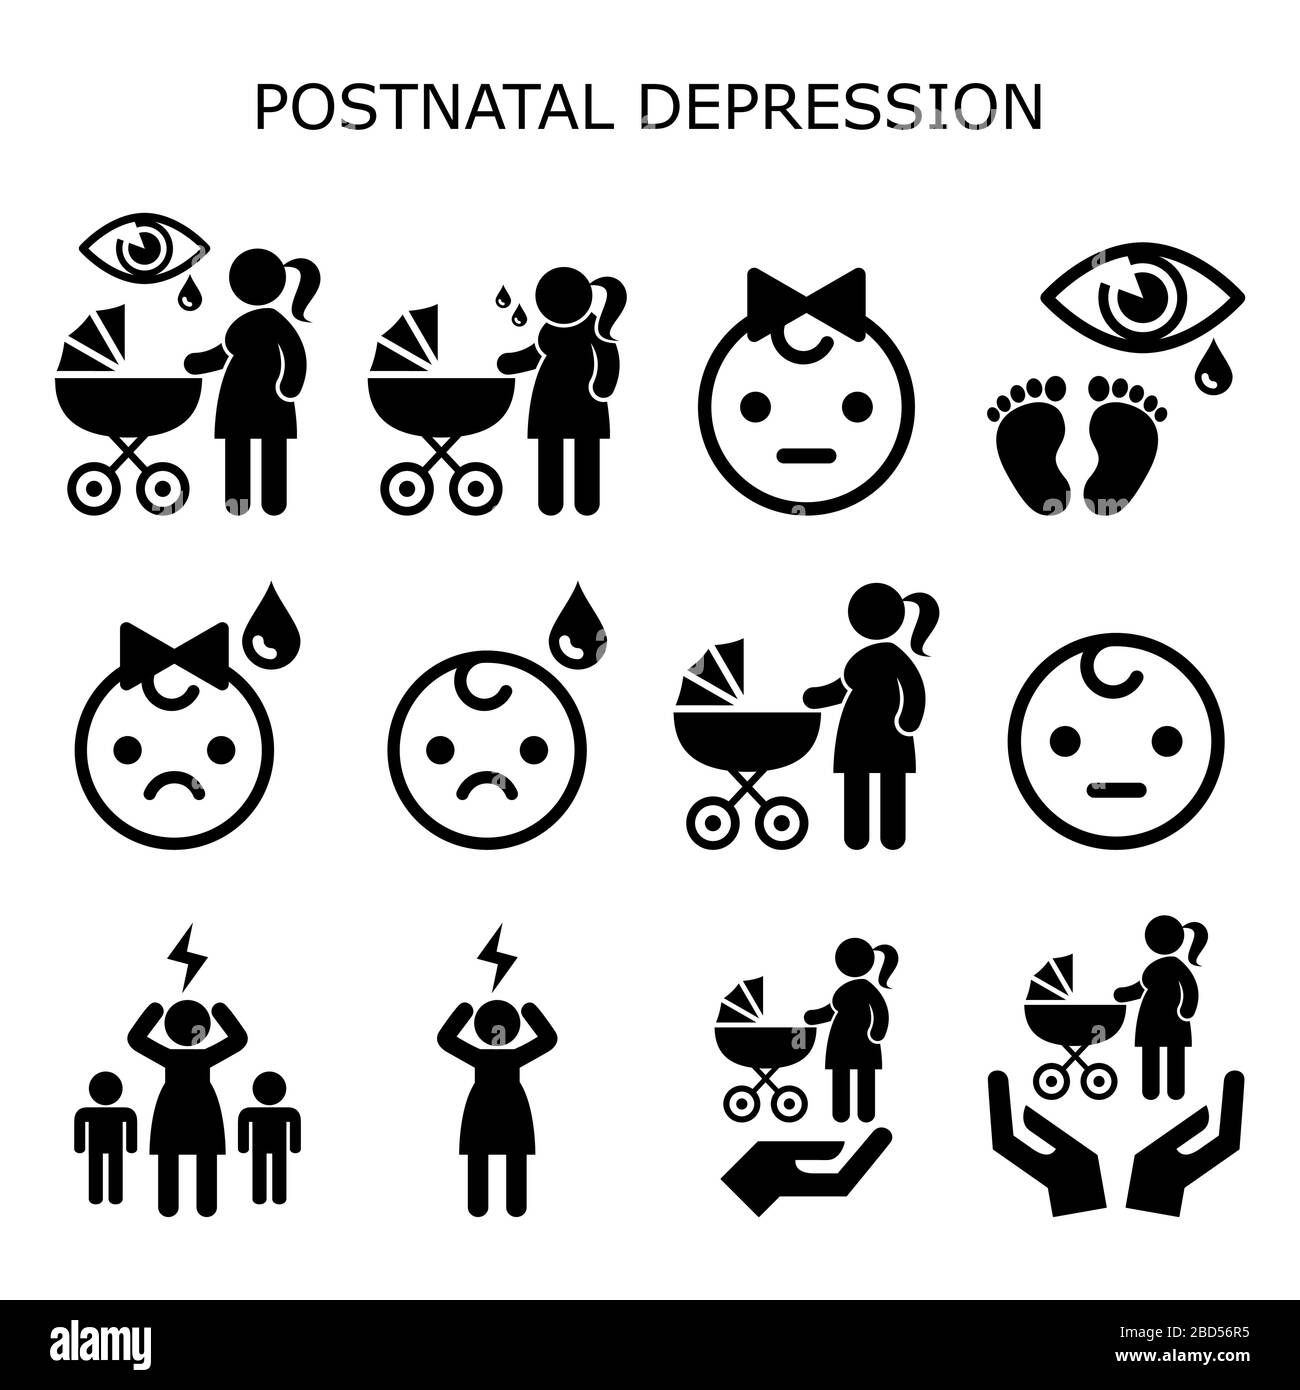 Depressione postnatale, set di icone del vettore di depressione postpartum - nuovo concetto di salute mentale delle madri, donne con bambino neonato che avverte il blues del bambino Illustrazione Vettoriale